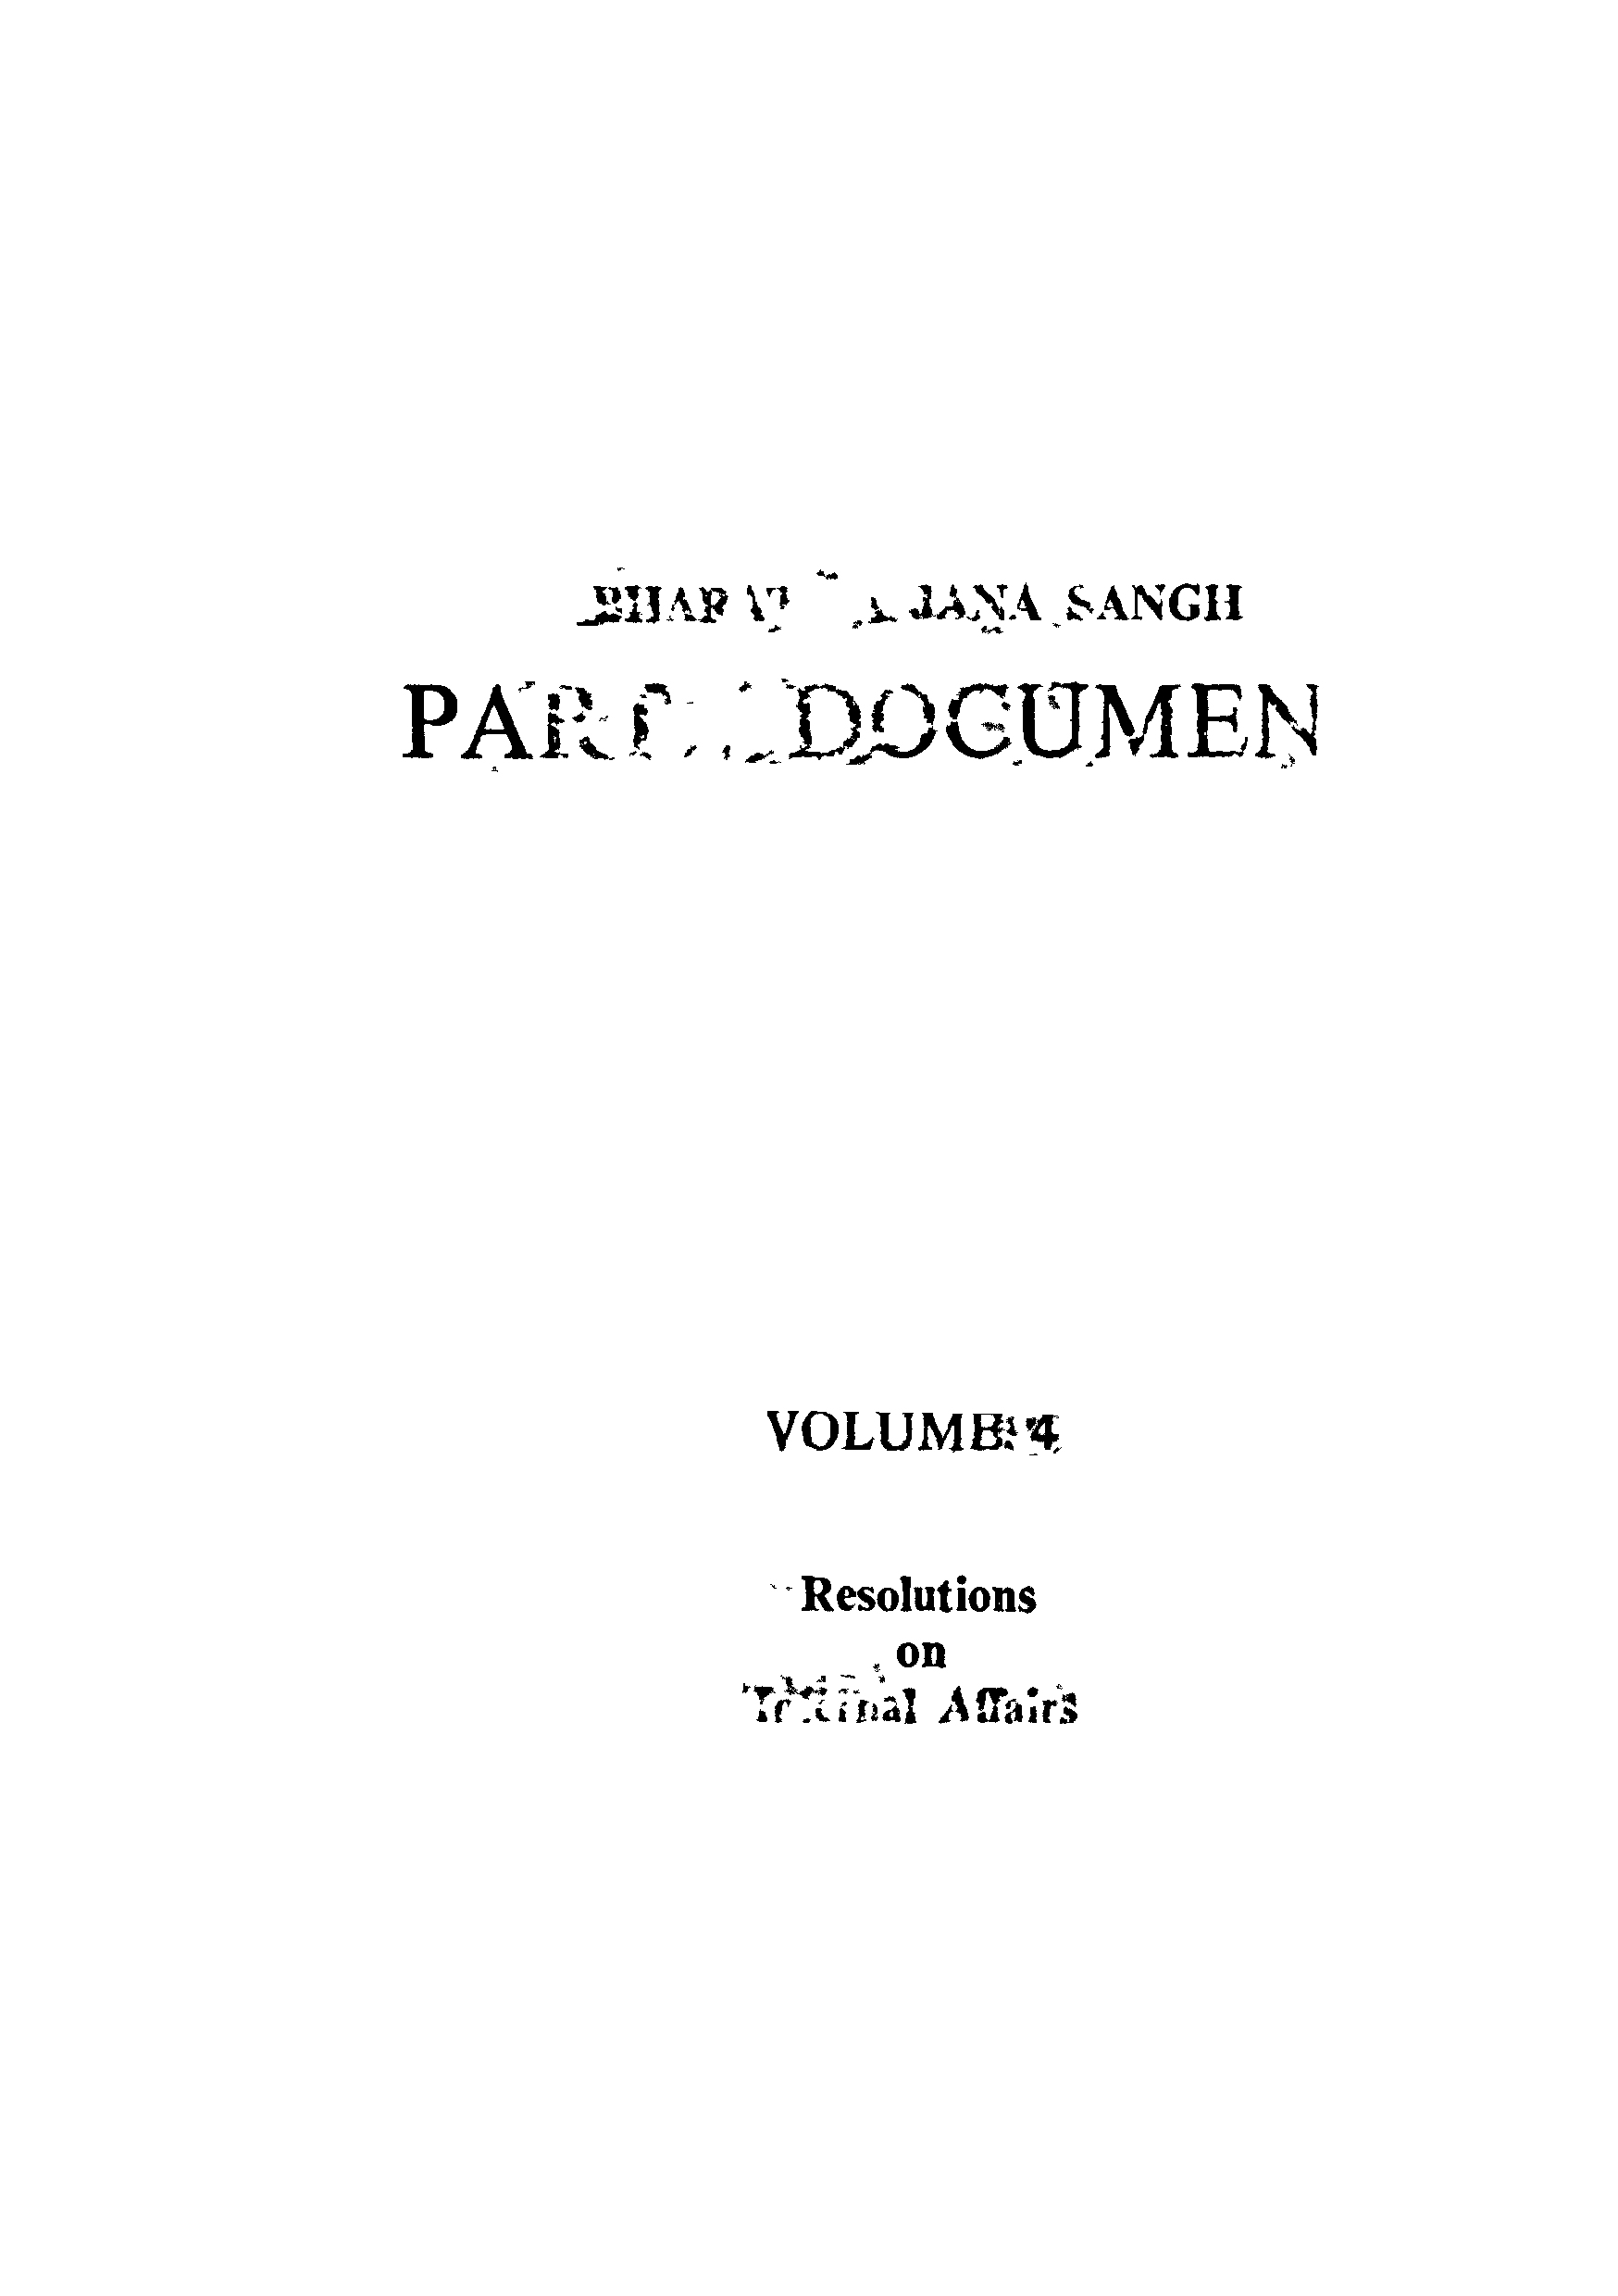 Bharatiya Jana Sangh Party Document Volume -4